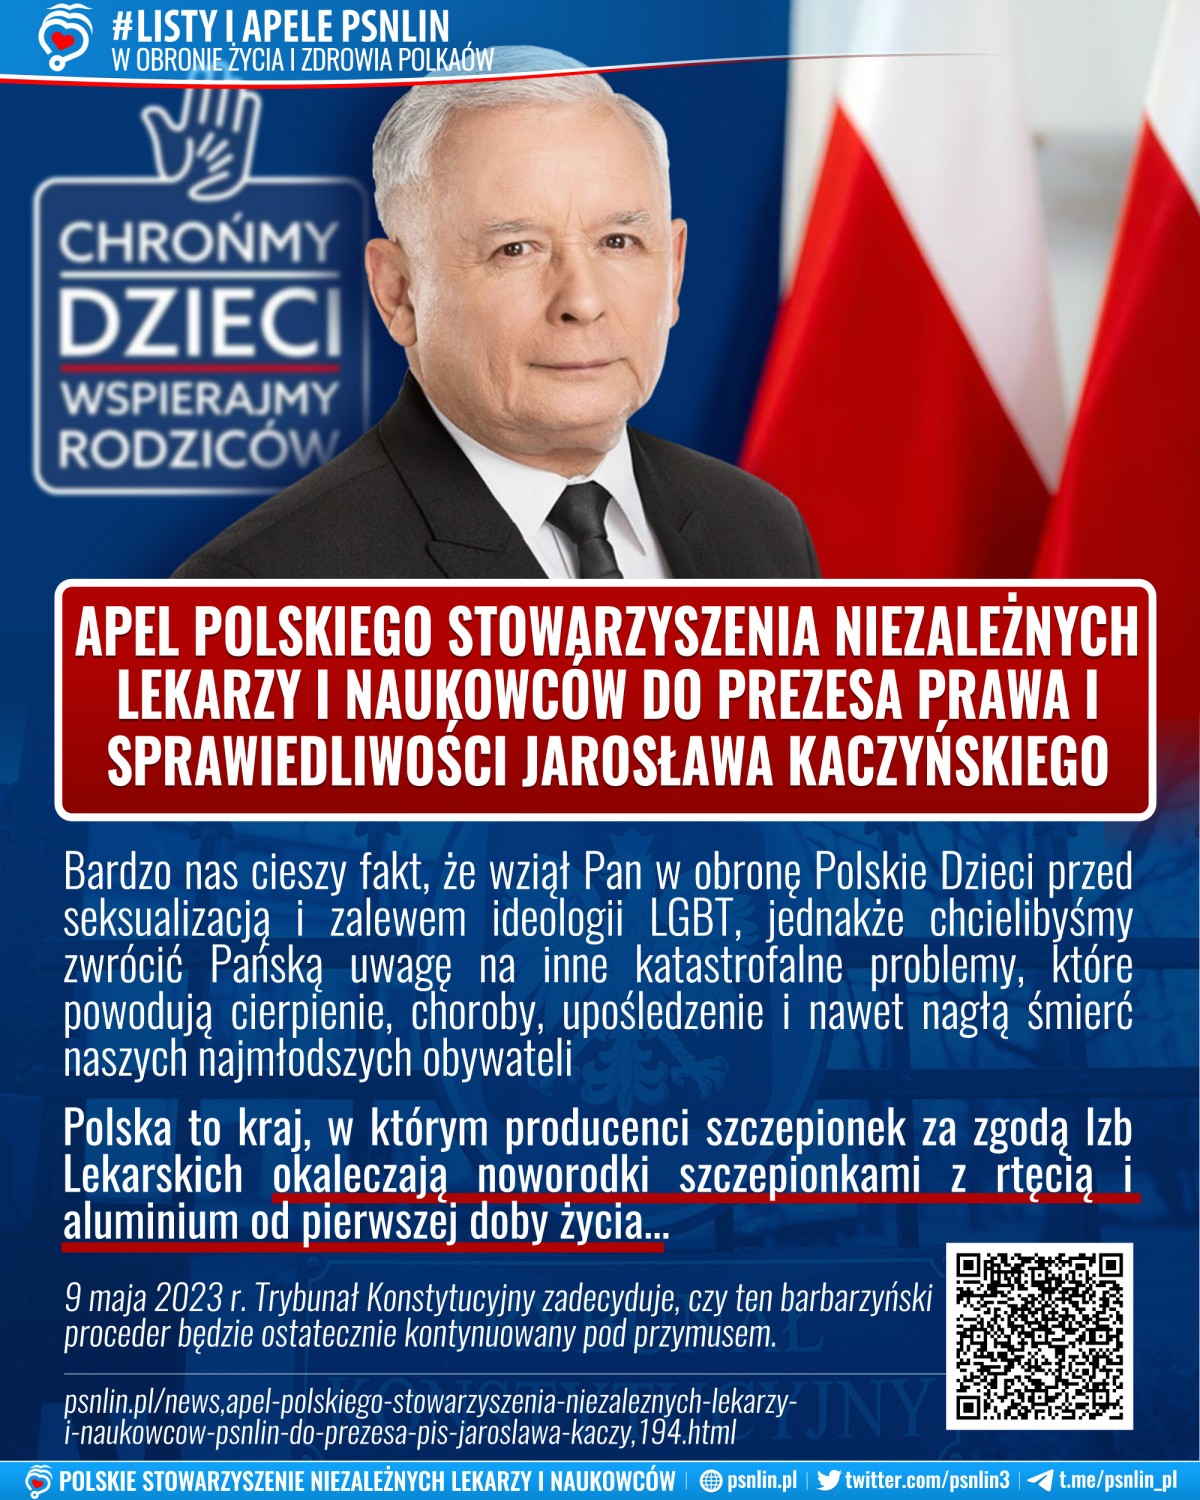 Apel PSNLiN do prezesa PiS Jarosława Kaczyńskiego w obronie Polskich Dzieci